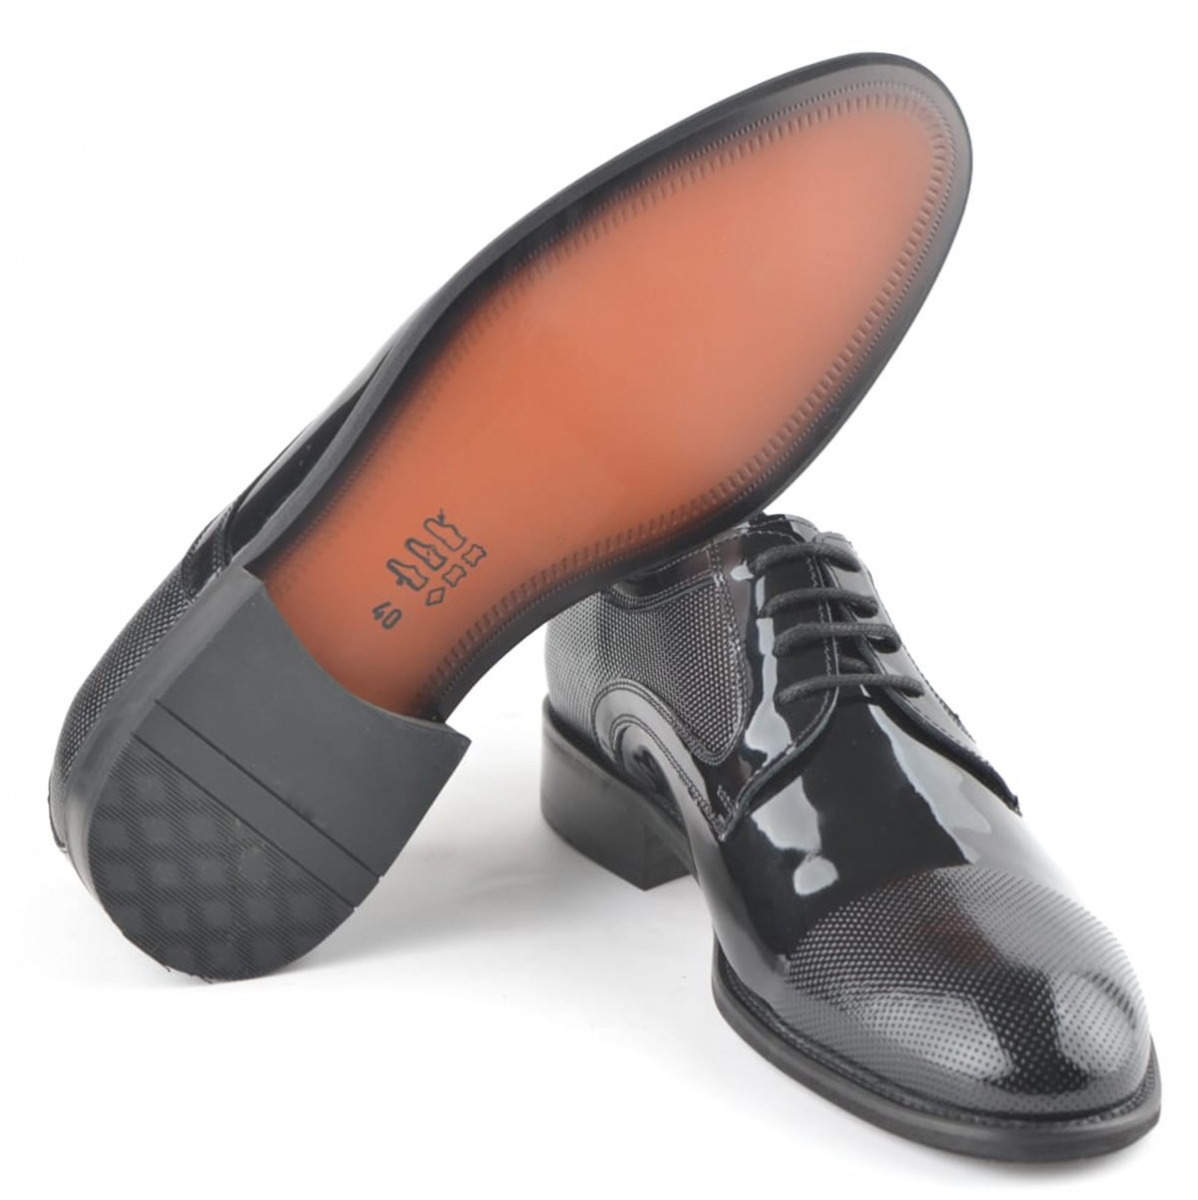 Flo Erkek Deri Klasik Ayakkabı İ19523-1 M 1000 SİYAH RUGAN. 5